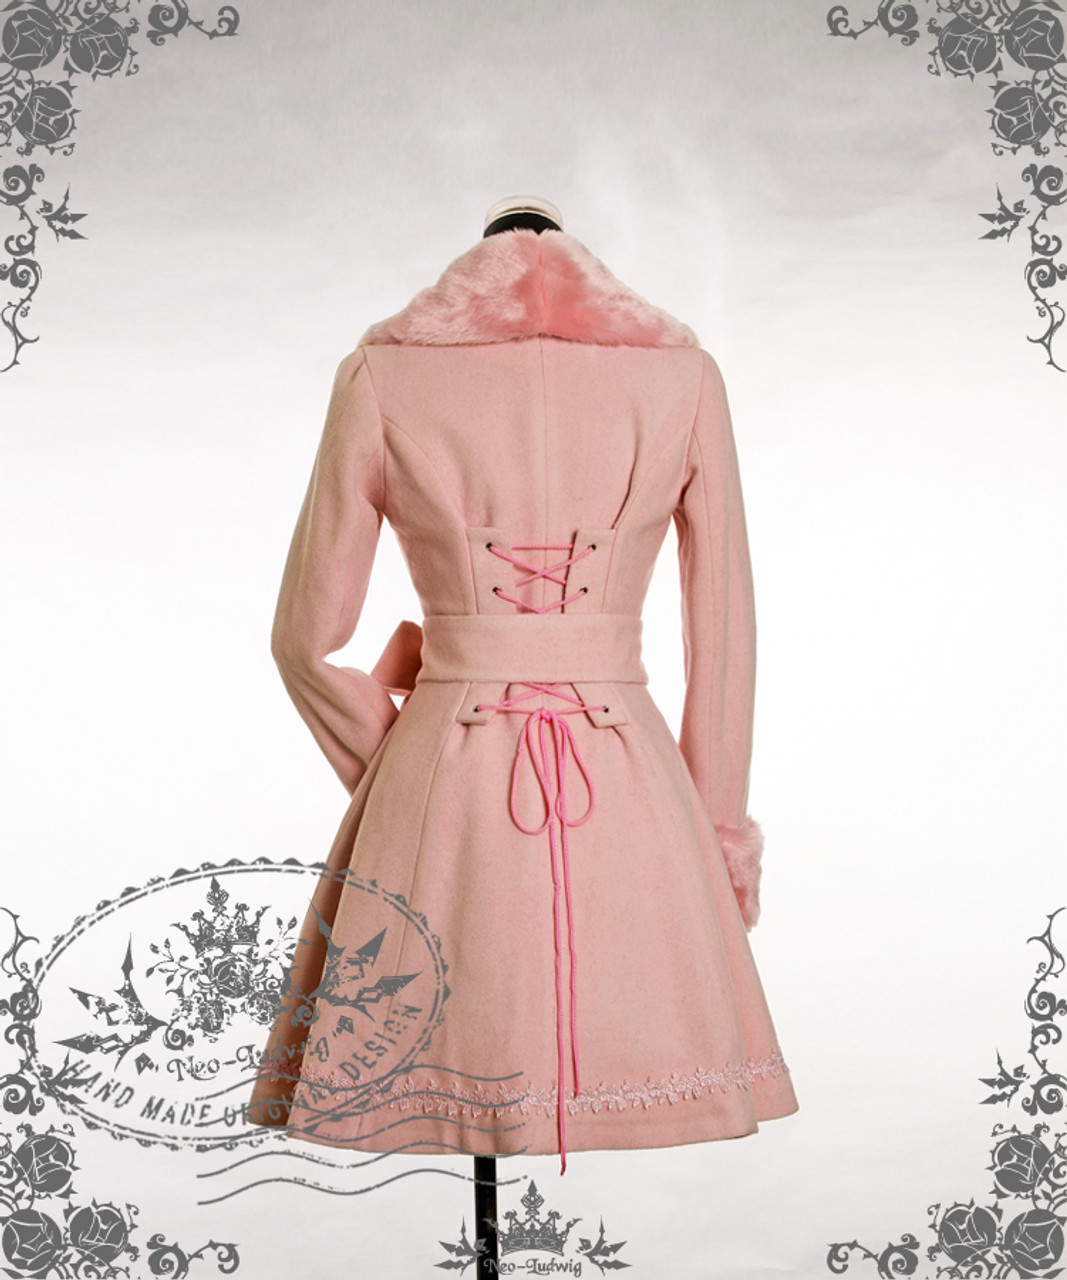 Belle Epoque, Gothic Lolita Elegant Embroidery Light Dress Coat False 2pcs Long Jacket&Faux Fur Collar Piece&Cuffs*4colors